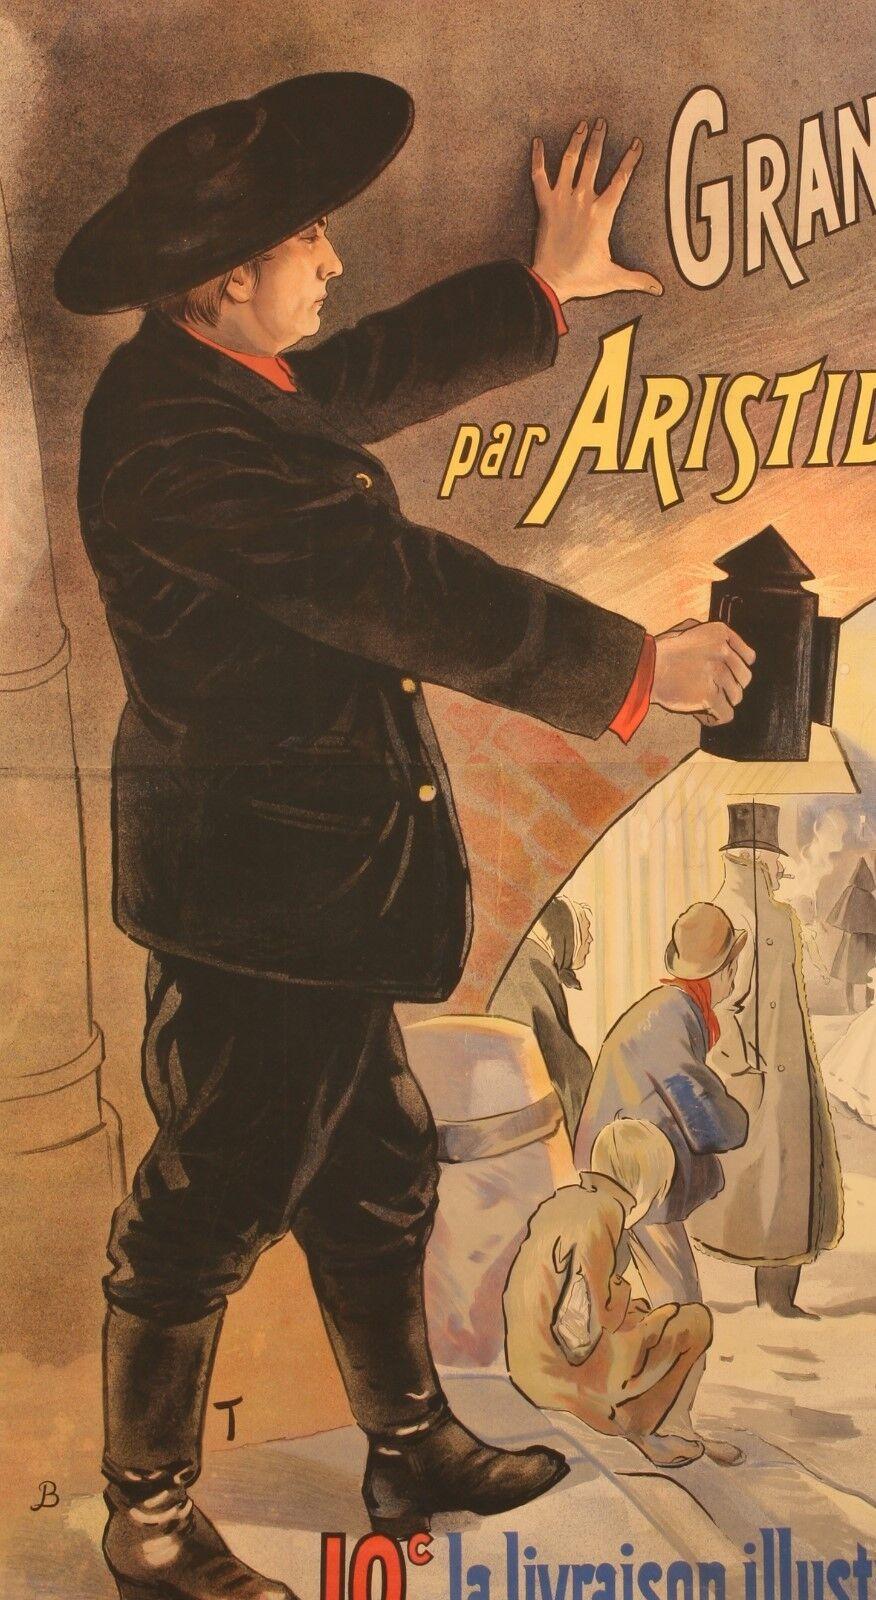 Original Vintage Plakat-Bas-Fonds von Paris-Aristide Bruant-Lautrec, 1895

Von AToulouse-Lautrec inspiriertes Plakat für die Veröffentlichung des Buches 